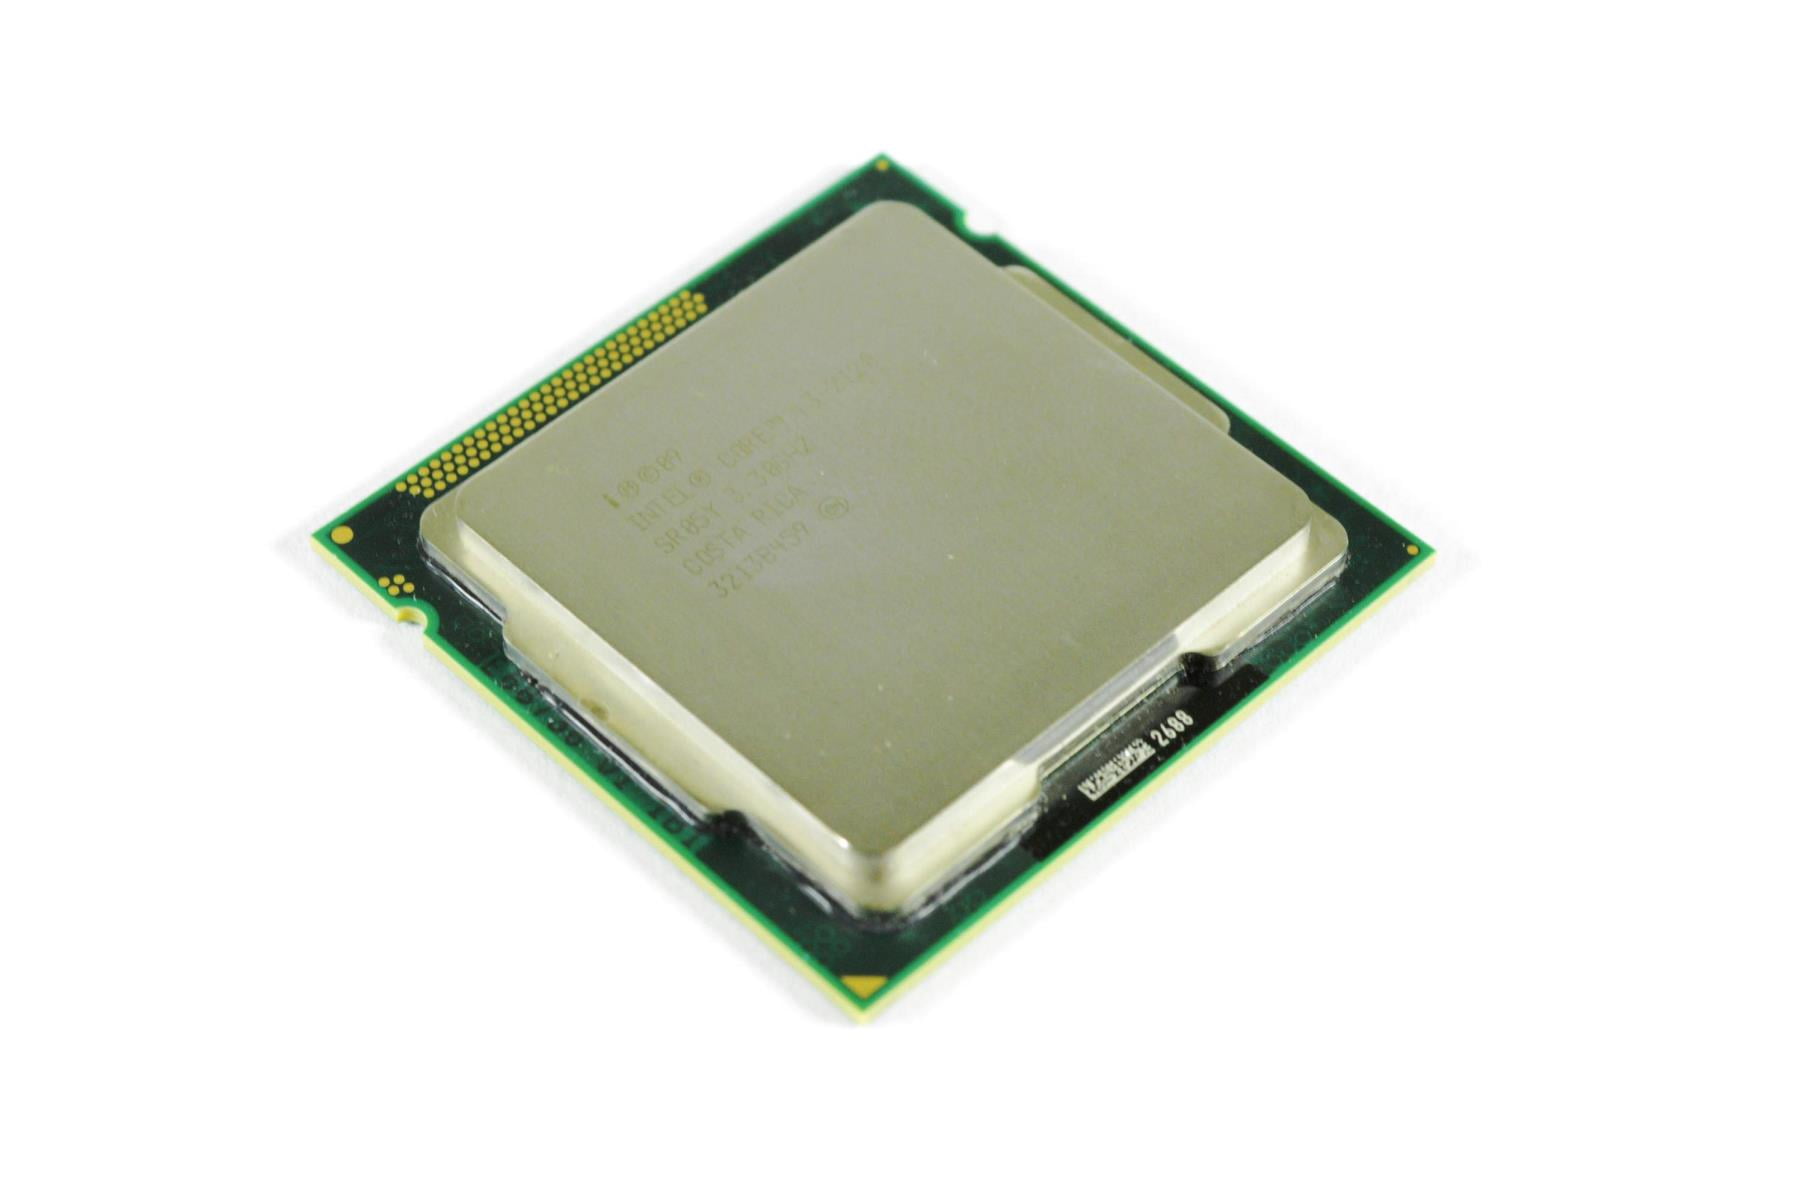 klant Lee Decimale intel core i3-2120 3.30ghz socket 1155 desktop computer cpu processor sr05y  - Walmart.com